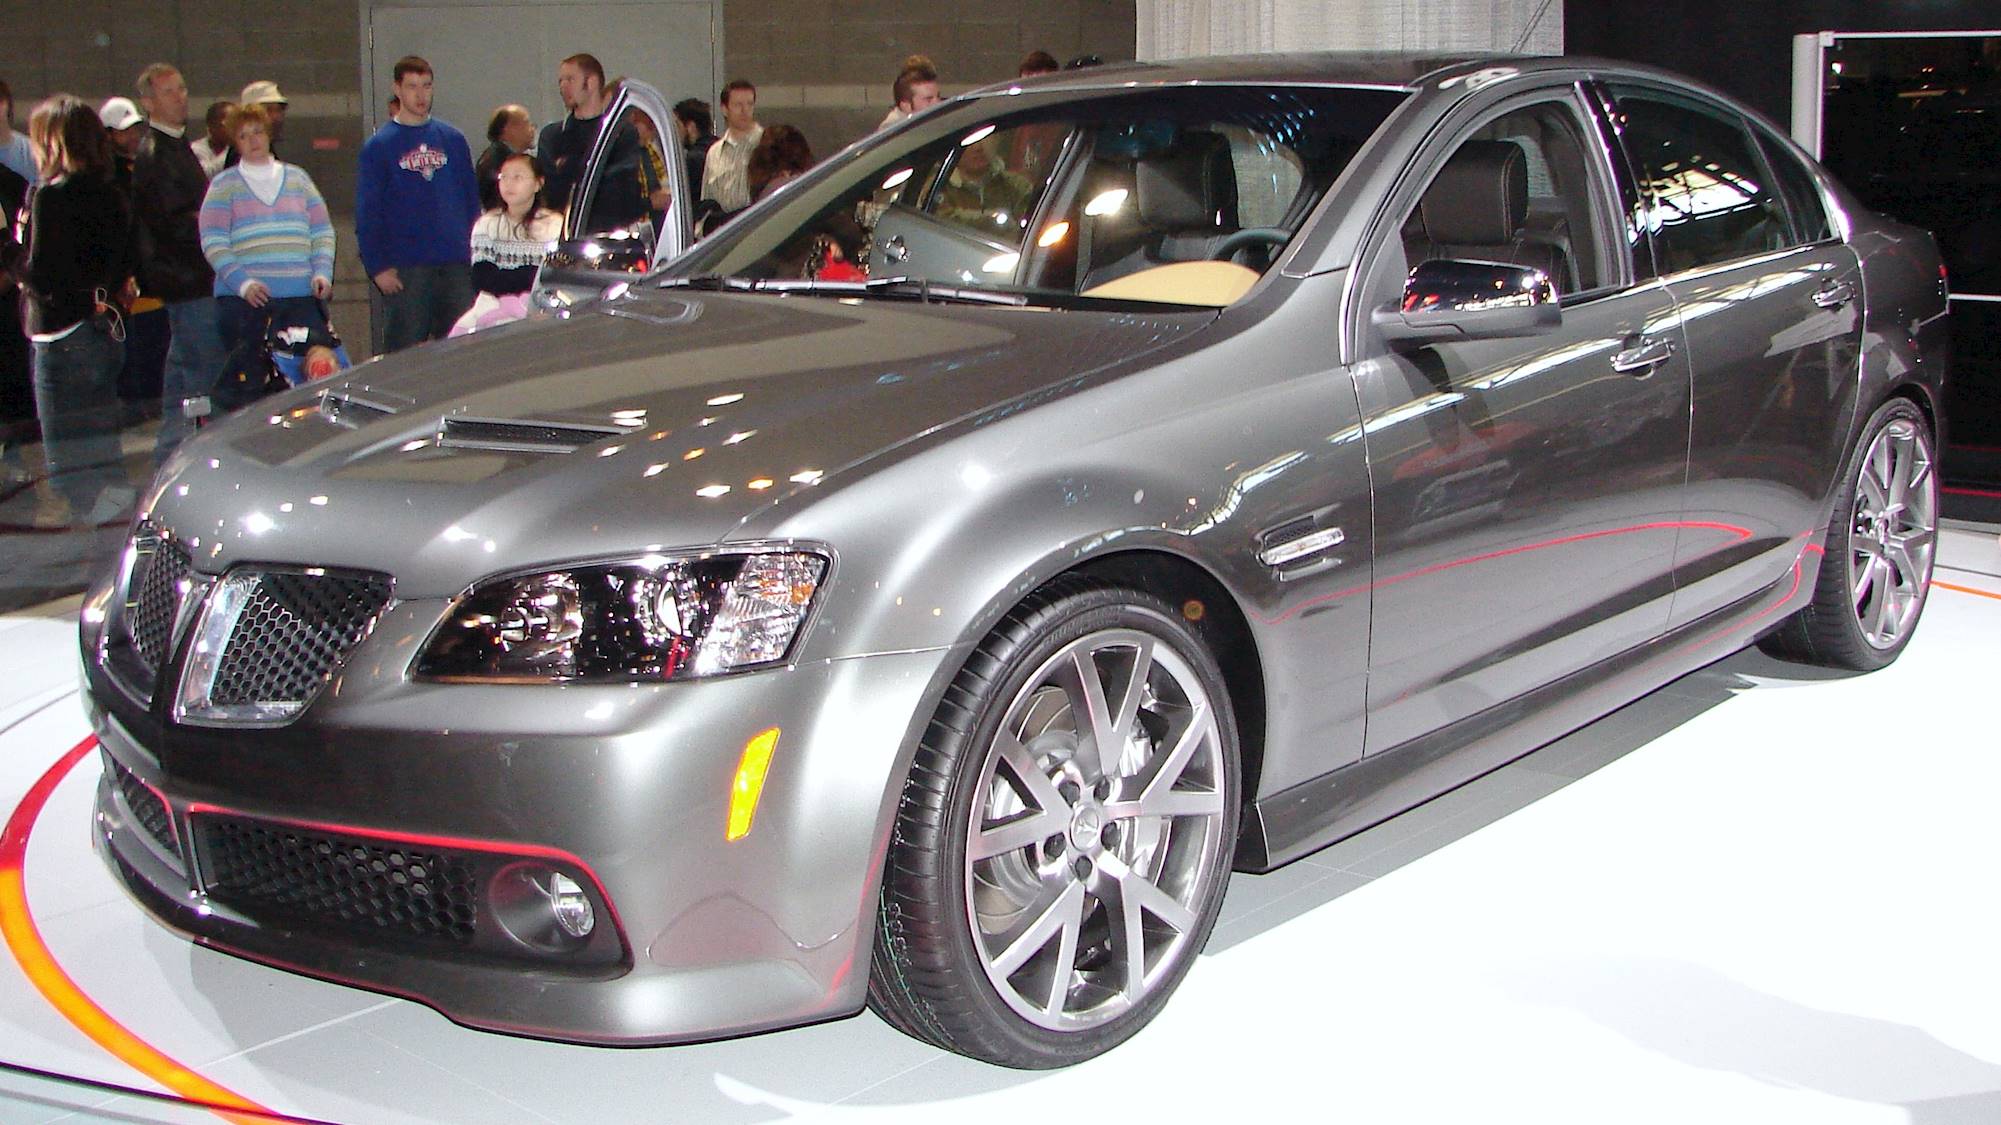 2008 Pontiac G8 GT